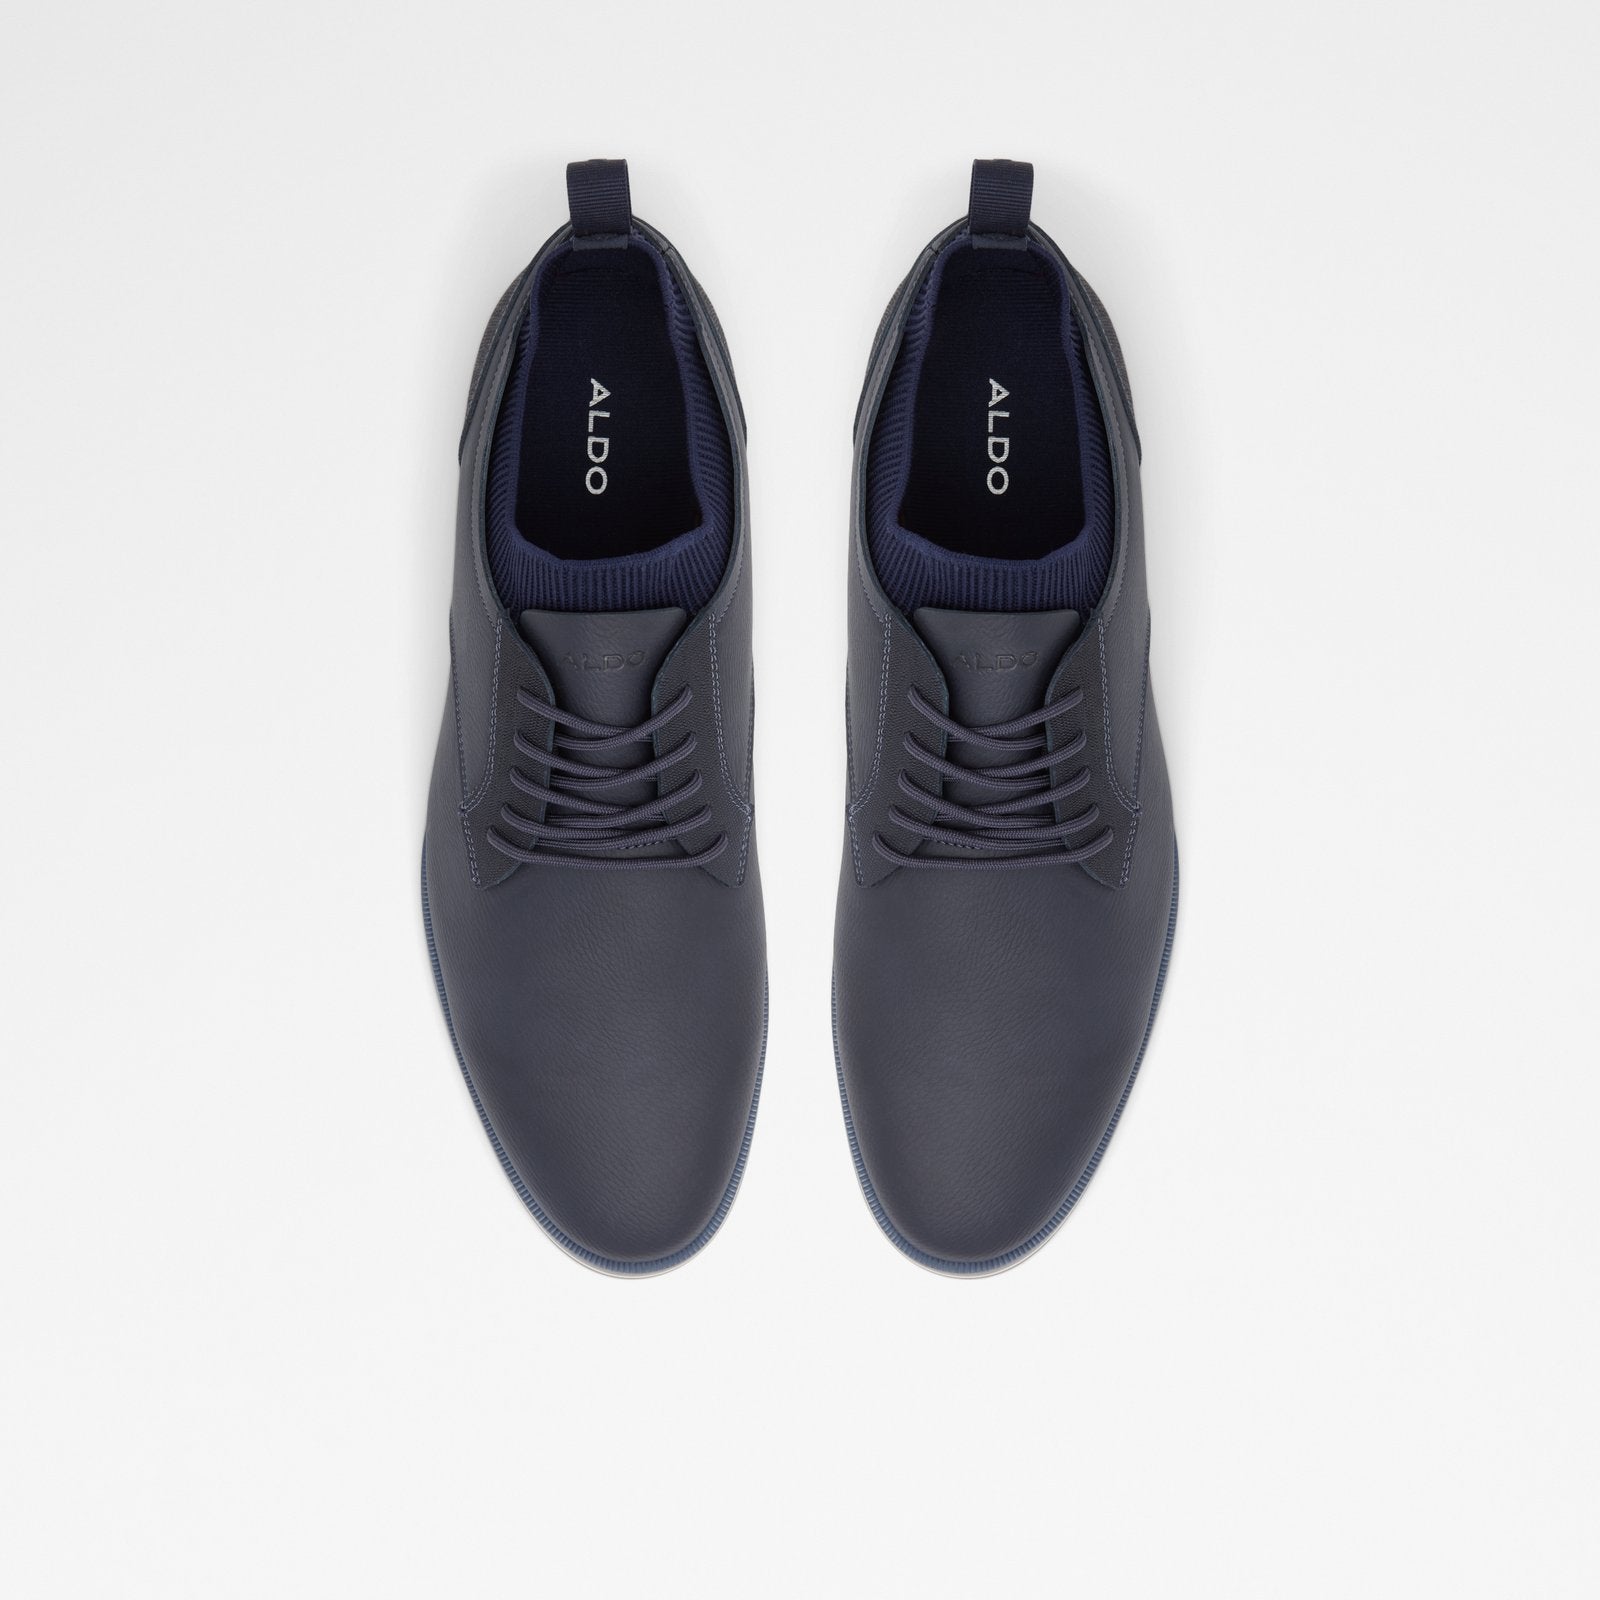 Gladosen / Dress Shoes Men Shoes - Navy - ALDO KSA